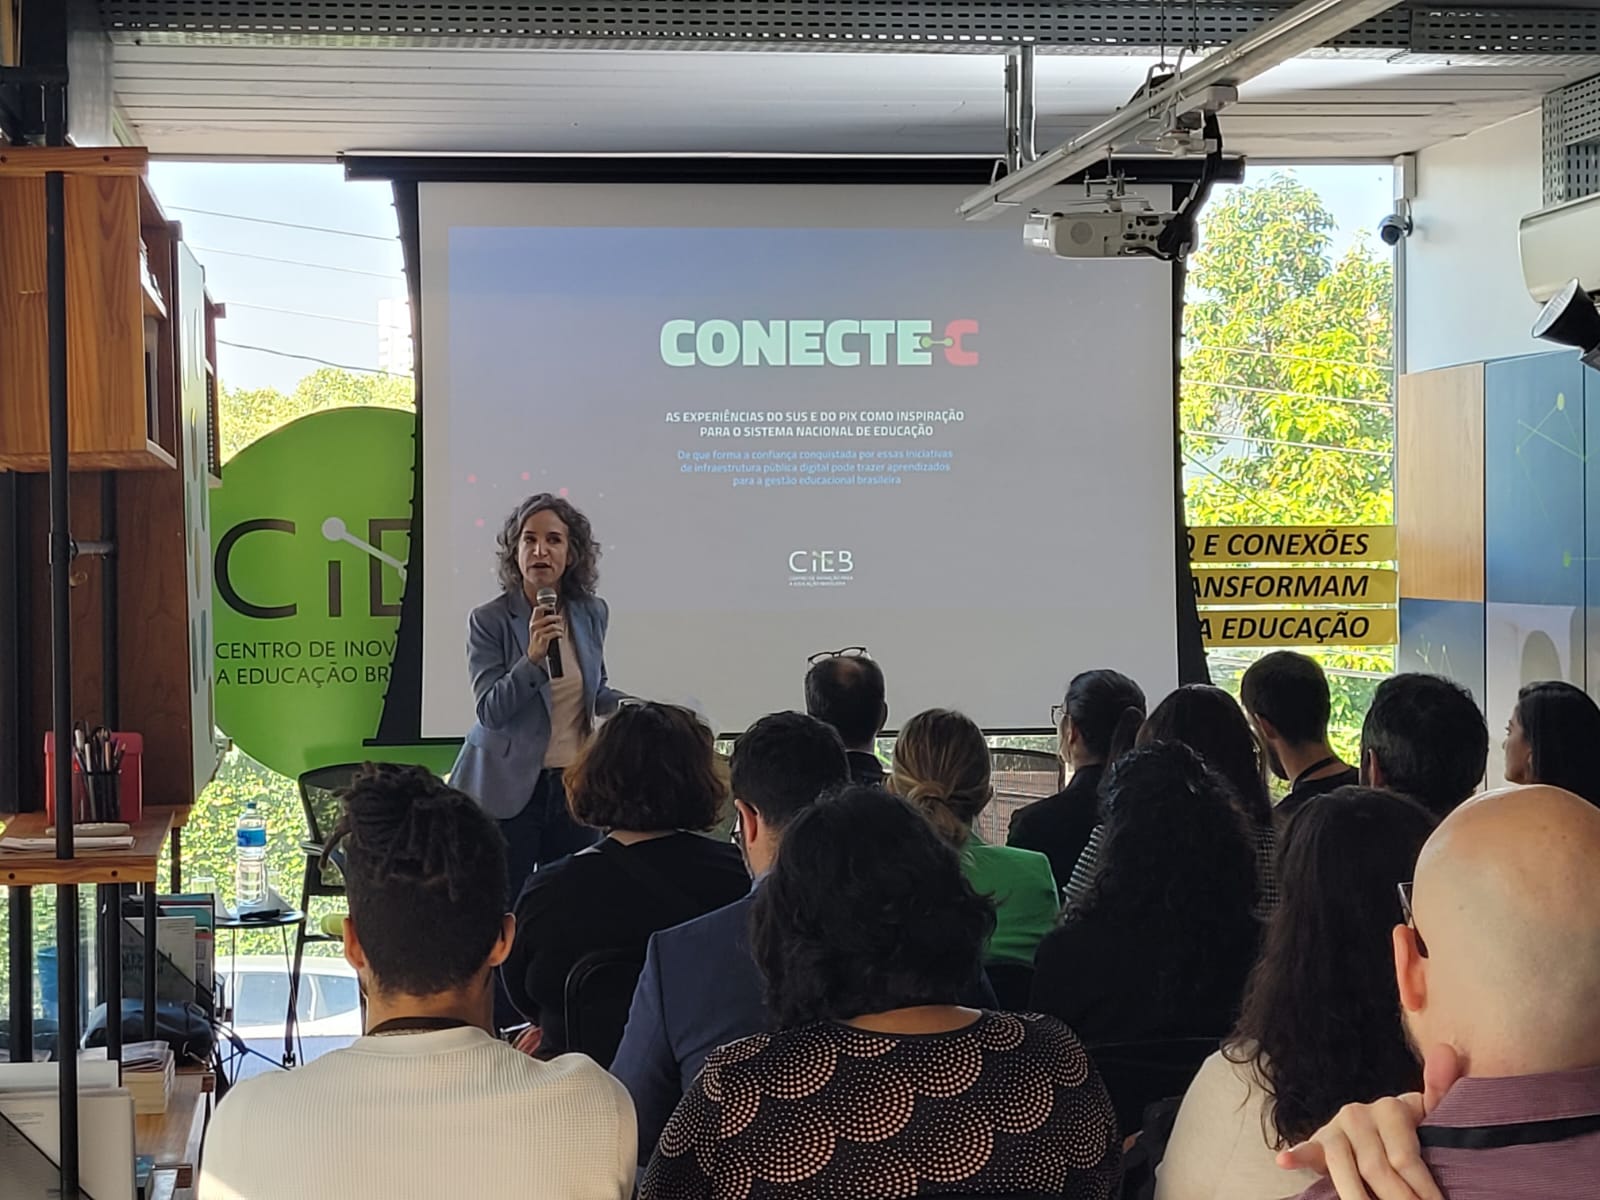 Conecte-C aborda infraestrutura pública digital à luz da educação